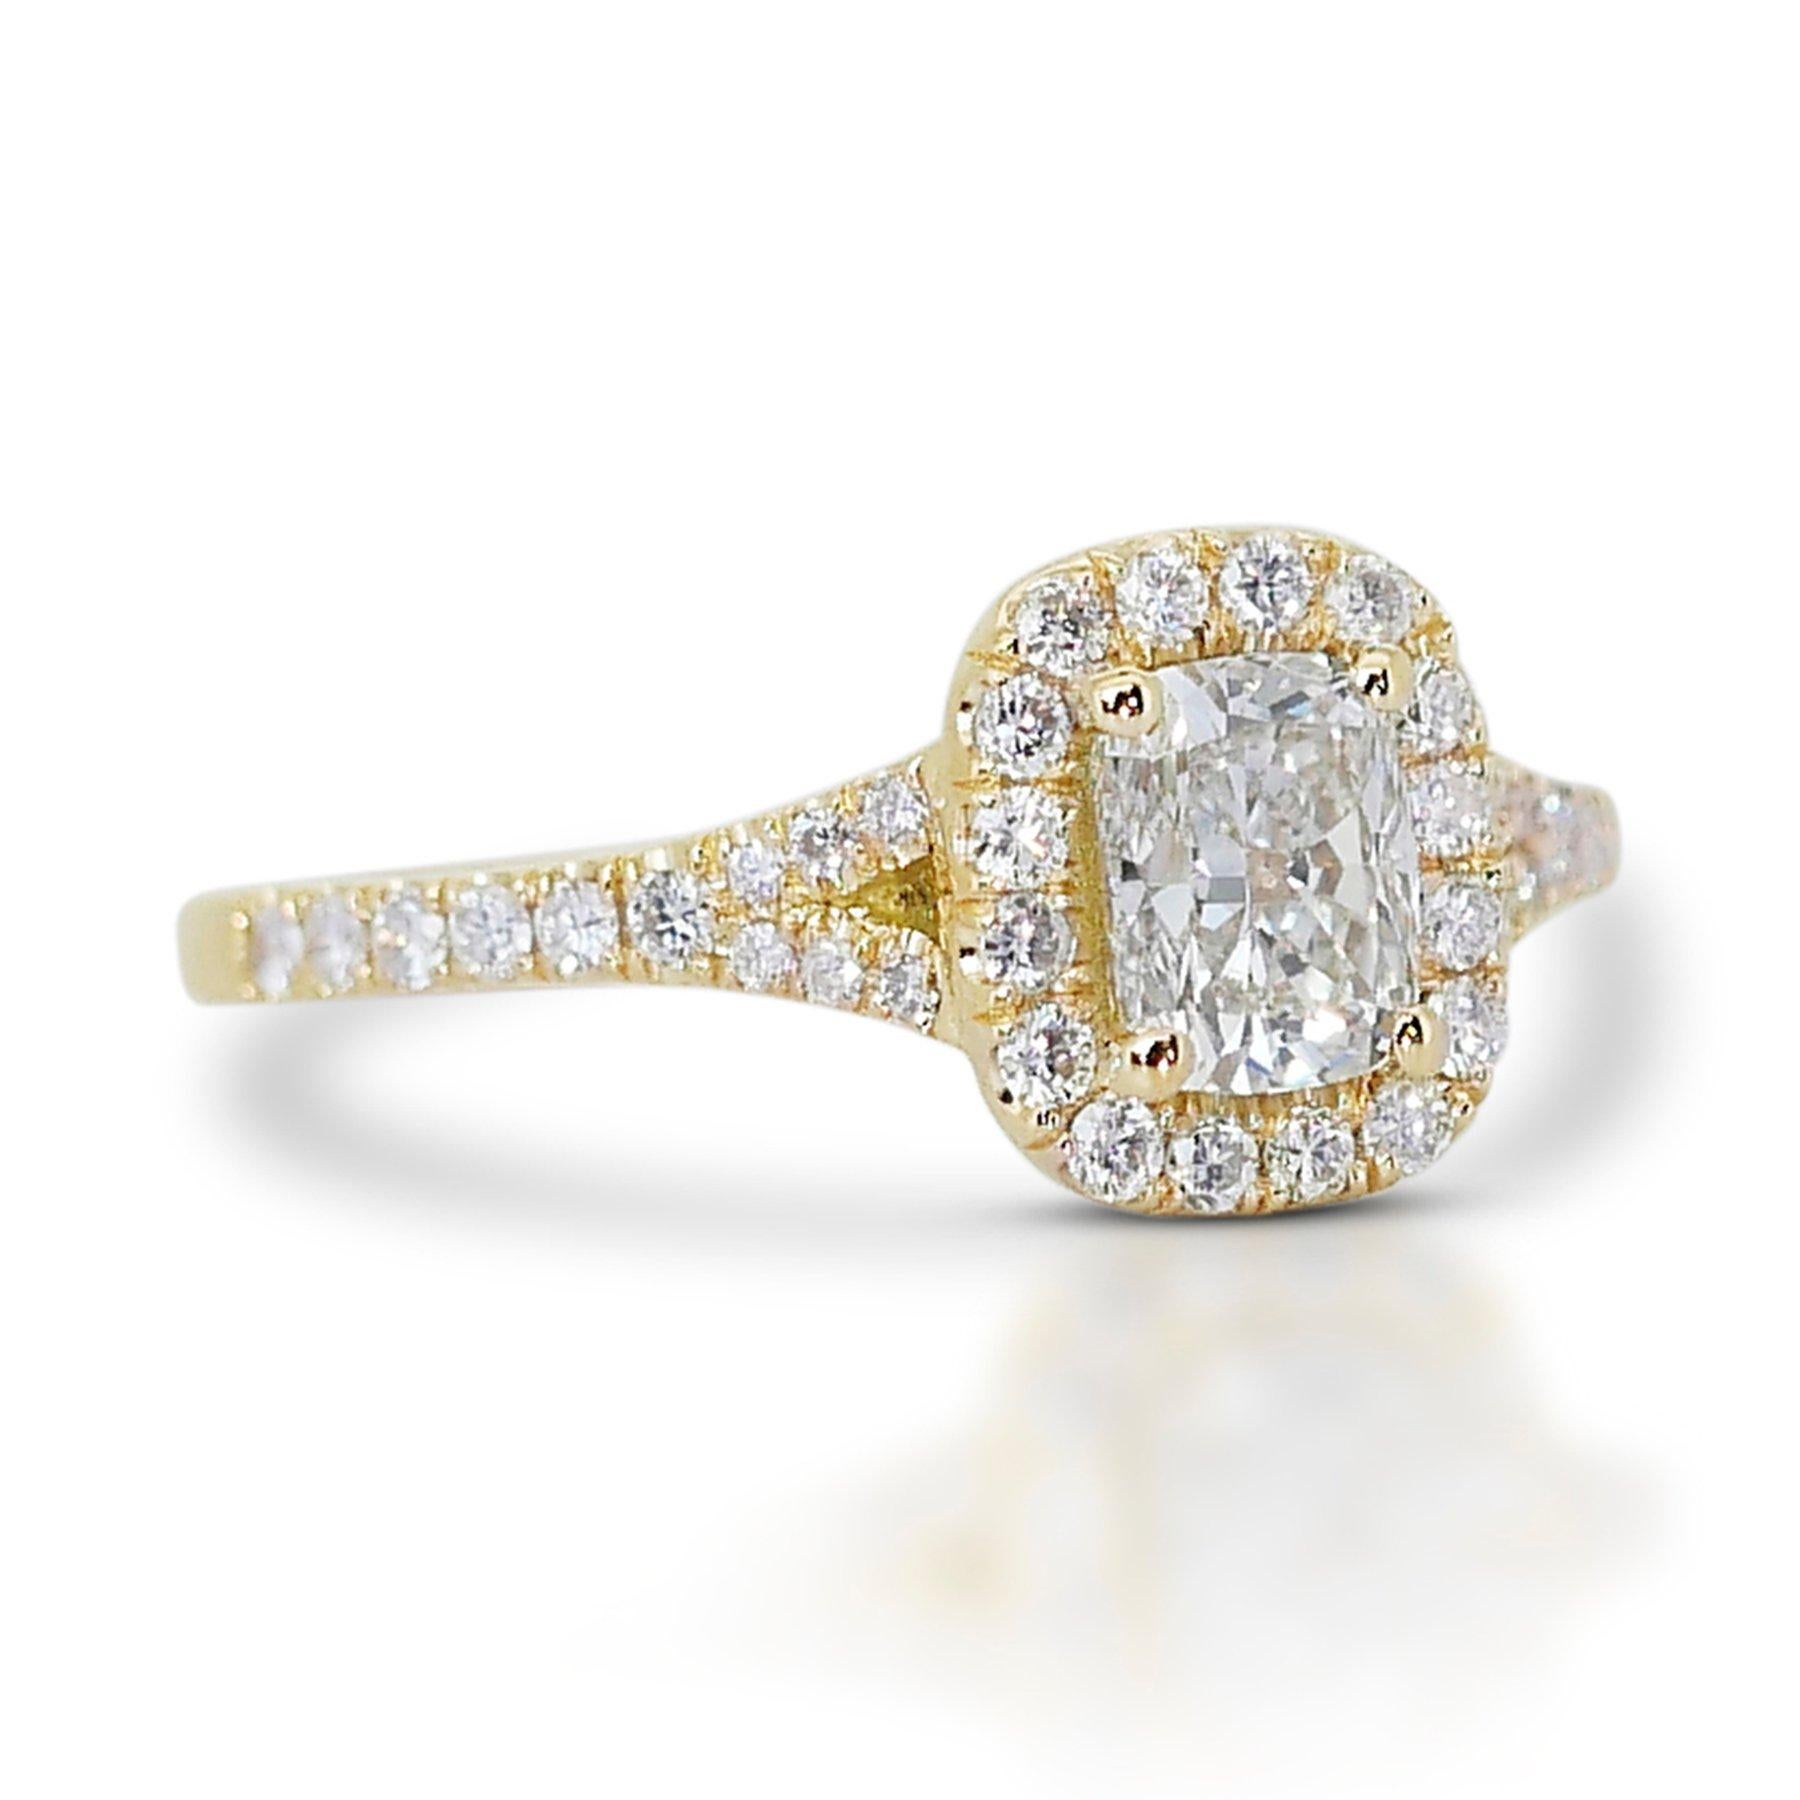 Brillant 1,33ct Diamant Halo Ring in 18k Gelbgold - GIA zertifiziert

Dieser exquisite Ring aus 18 Karat Gelbgold ist mit seinem Hauptdiamanten im Kissenschliff von 1,00 Karat ein Beispiel für Luxus. 40 runde, seitliche Diamanten von insgesamt 0,33